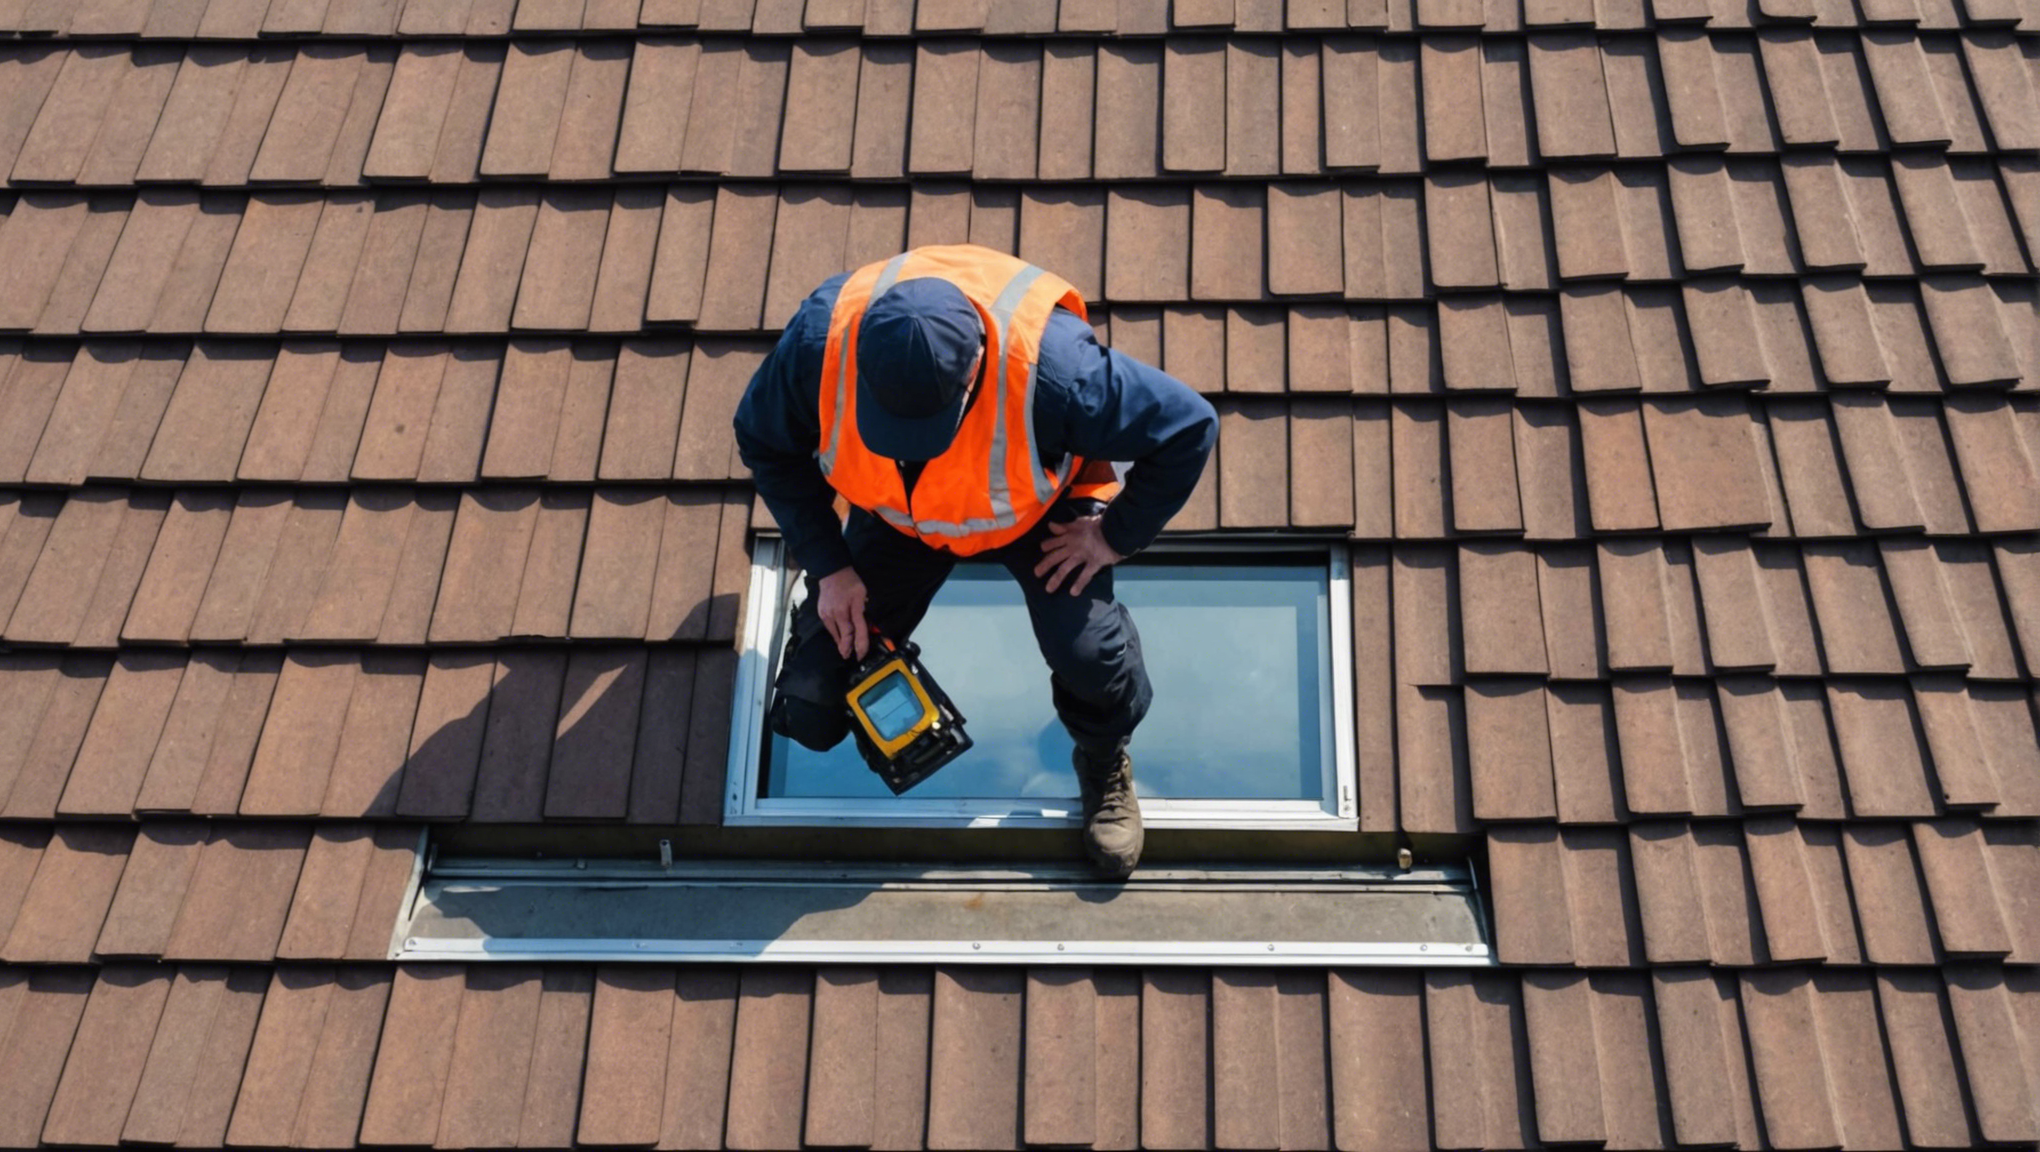 trouvez les meilleurs services d'inspection de toiture près de chez vous avec des professionnels expérimentés et des tarifs compétitifs. obtenez une évaluation précise de l'état de votre toit pour assurer sa durabilité et votre tranquillité d'esprit.